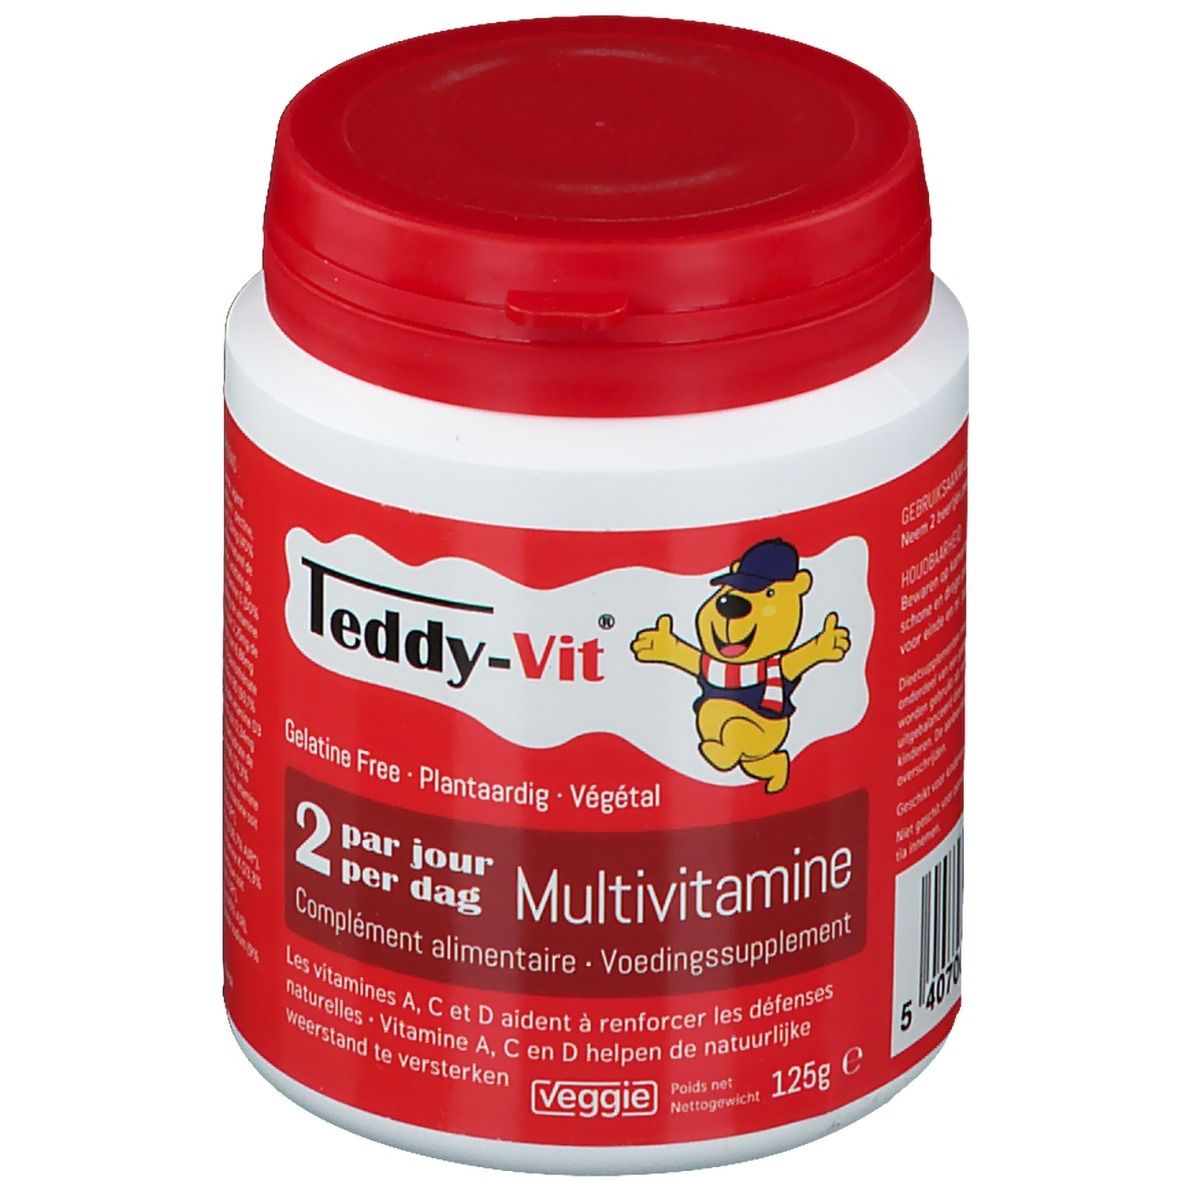 Teddy-Vit® Multivitamines